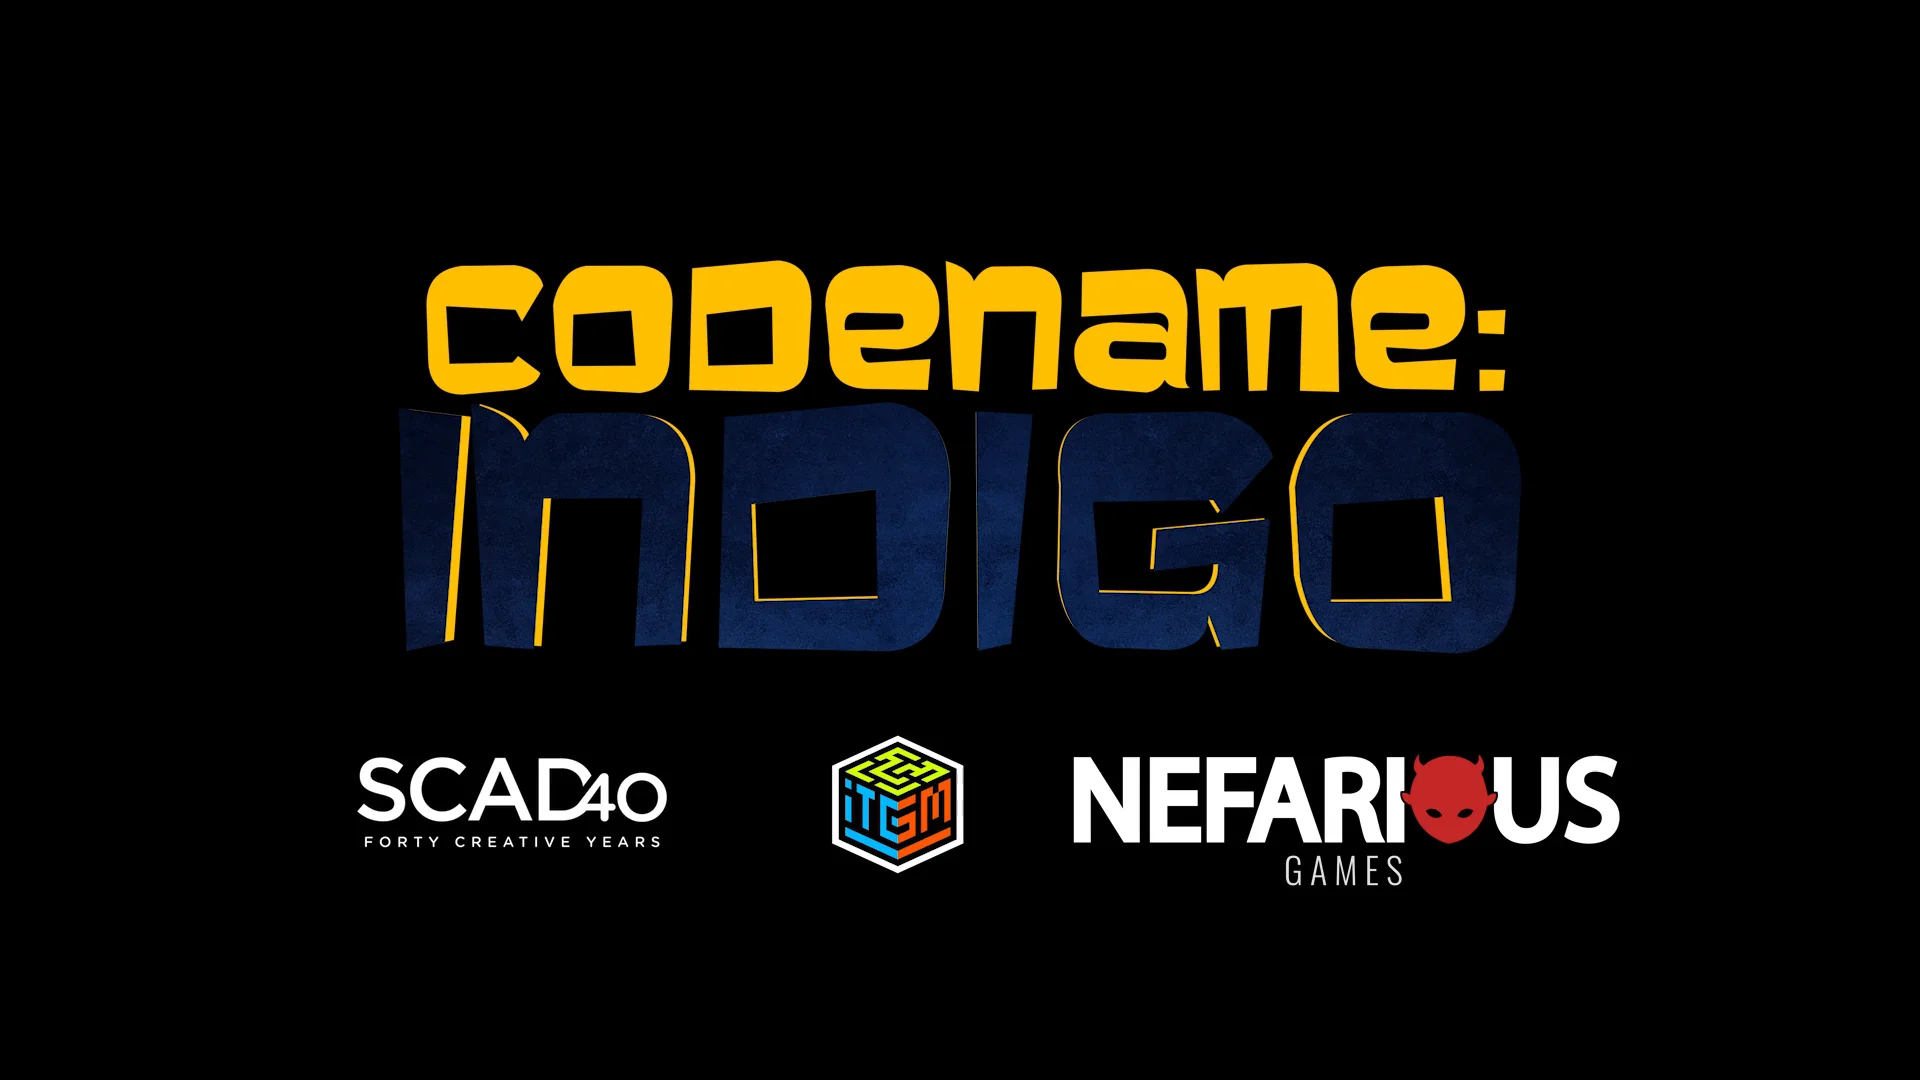 CODENAME: INDIGO jogo online gratuito em